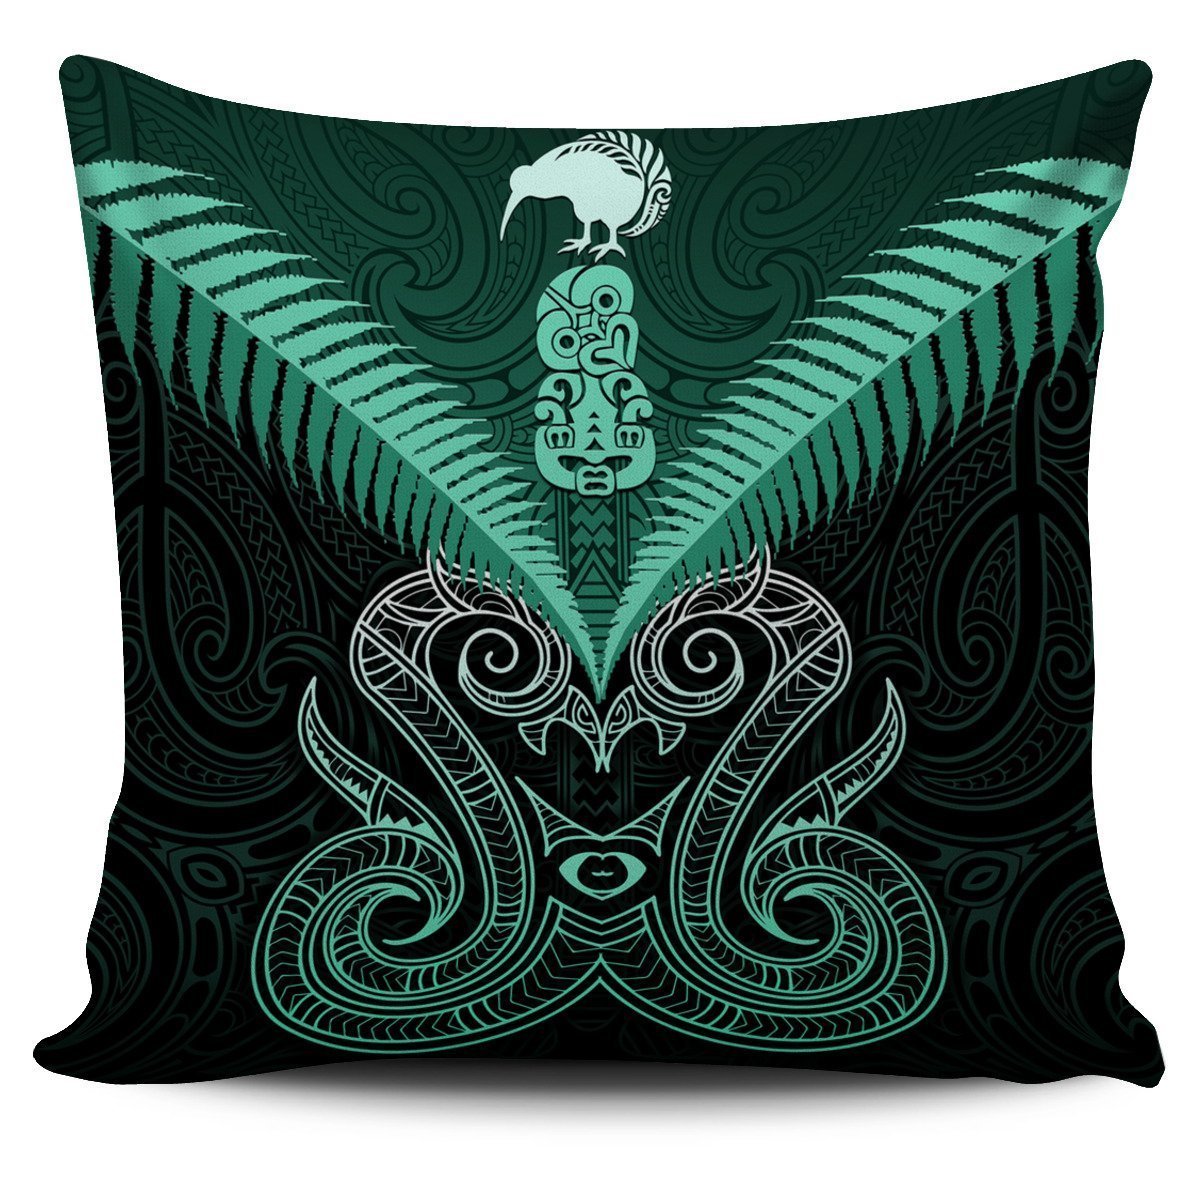 Maori Manaia New Zealand Pillow Cover Turquoise - Polynesian Pride